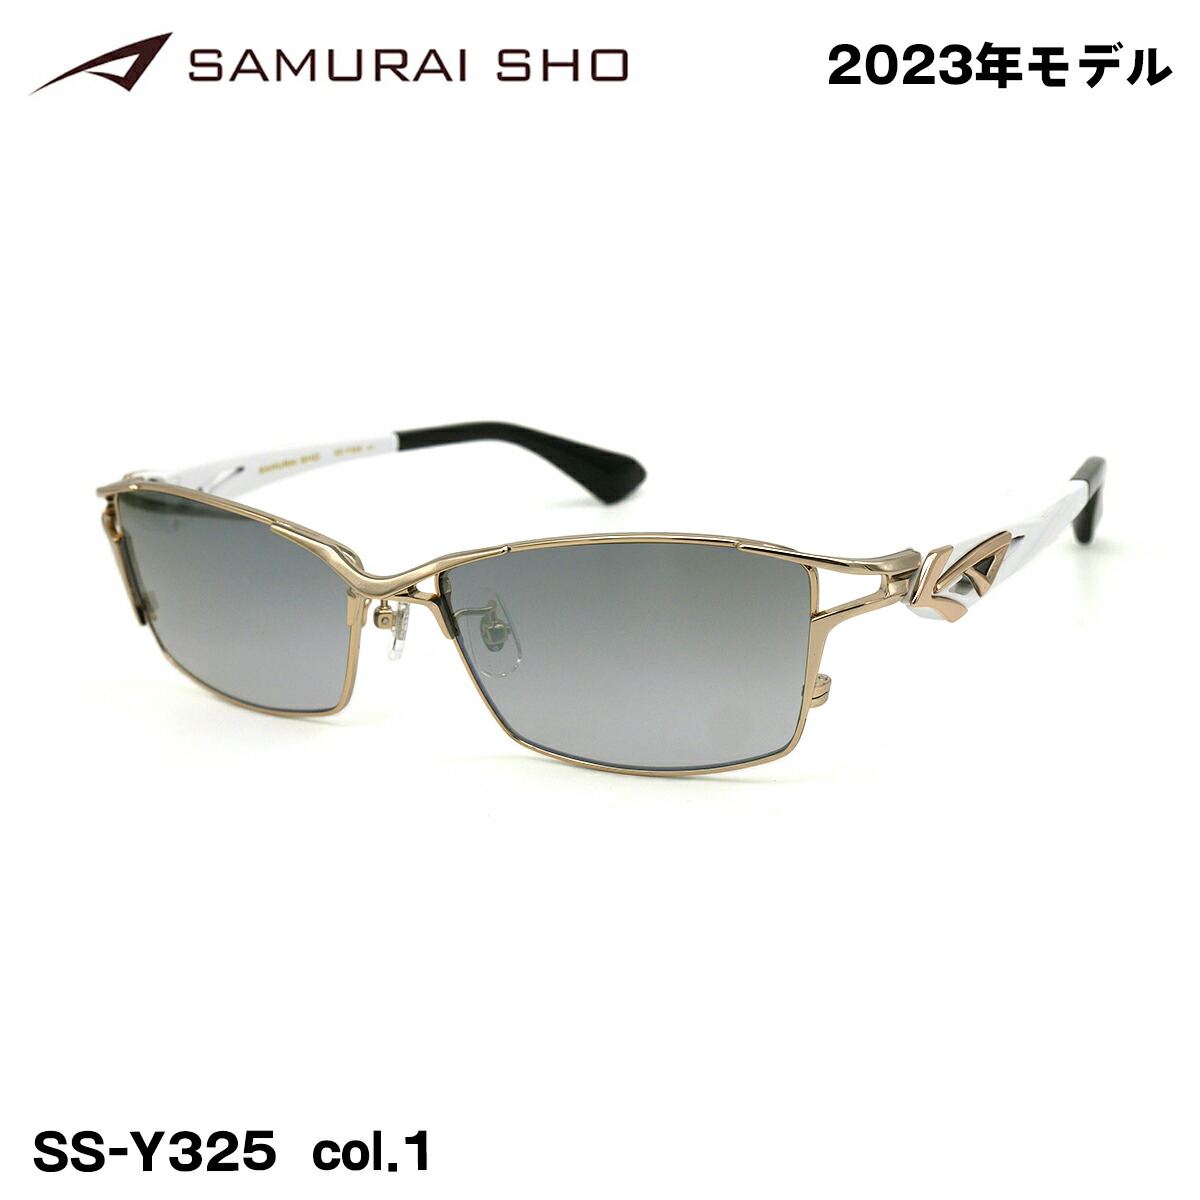 格安販売中 SAMURAI翔 2023 サングラス SSY325-1 ゴールド サムライ翔